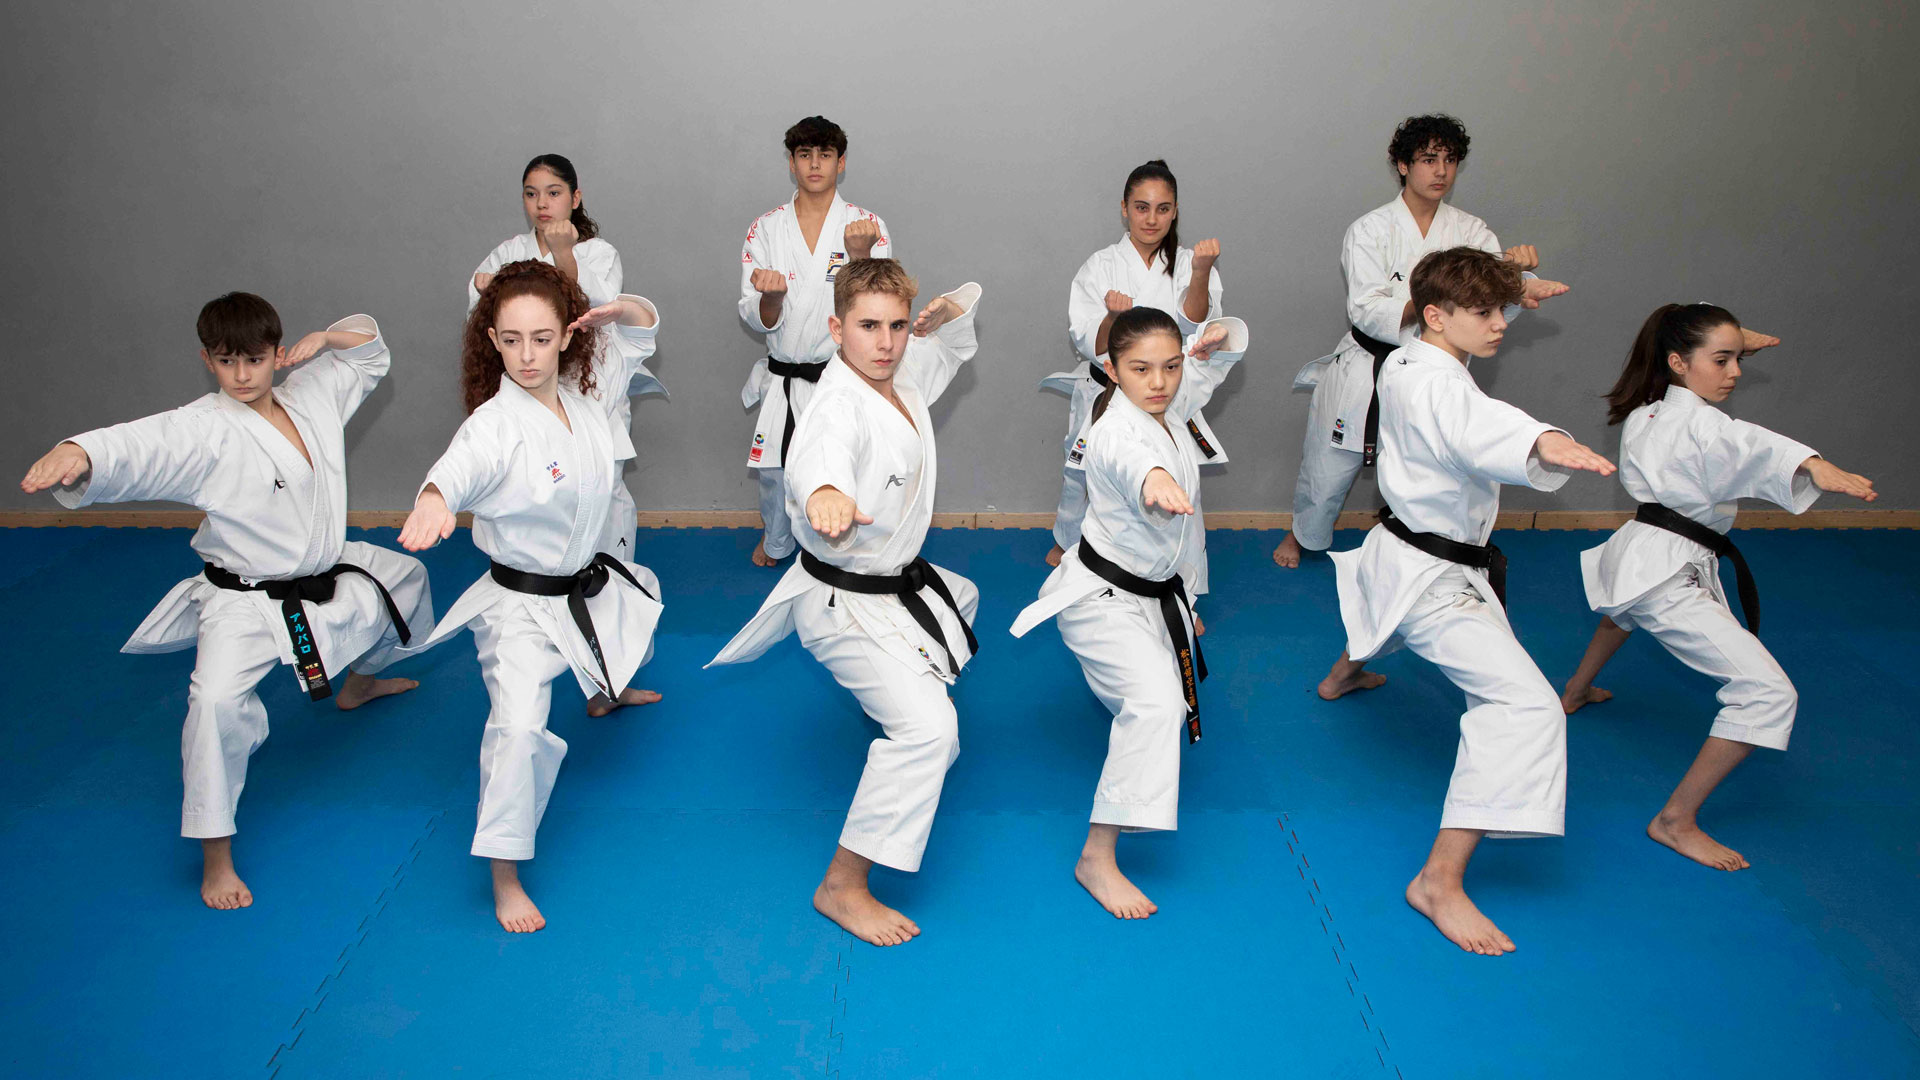 Clases de karate que combinan diversión y desarrollo personal en La Eliana